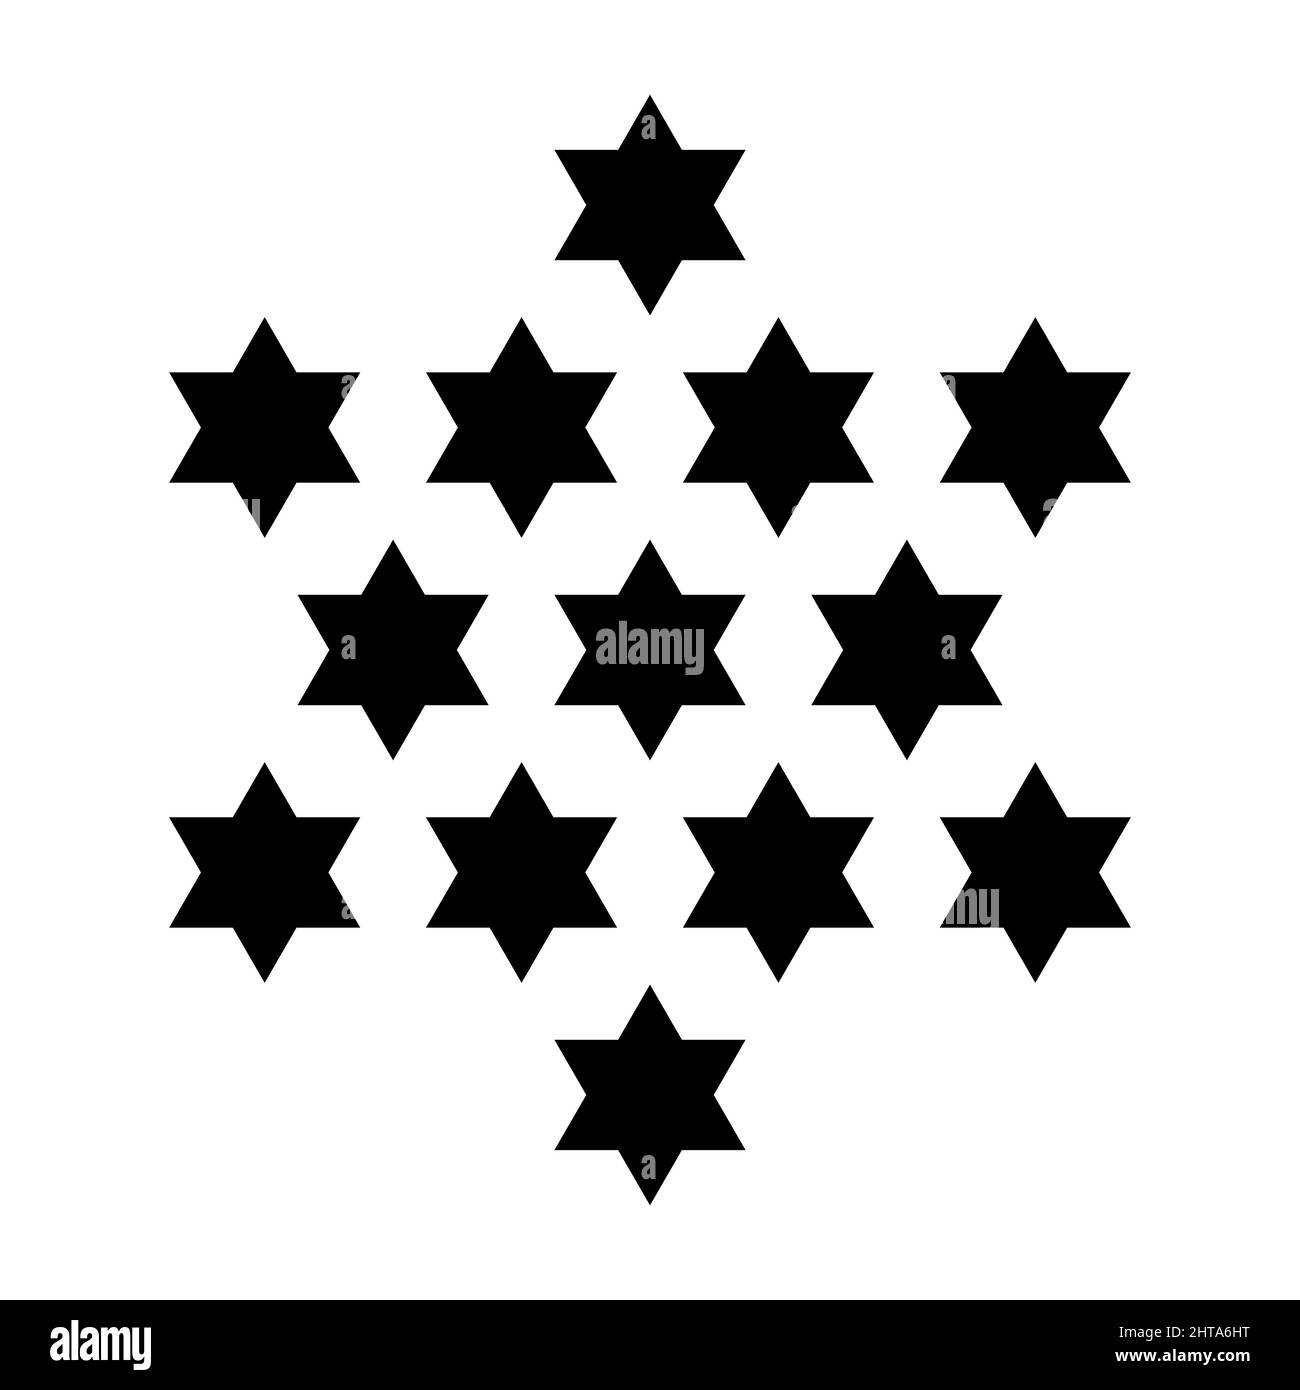 Tredici stelle. 13 esagrammi che formano una stella centrata a sei punte, come la Stella di Davide. Simbolo, utilizzato nel Grande Sigillo degli Stati Uniti. Foto Stock